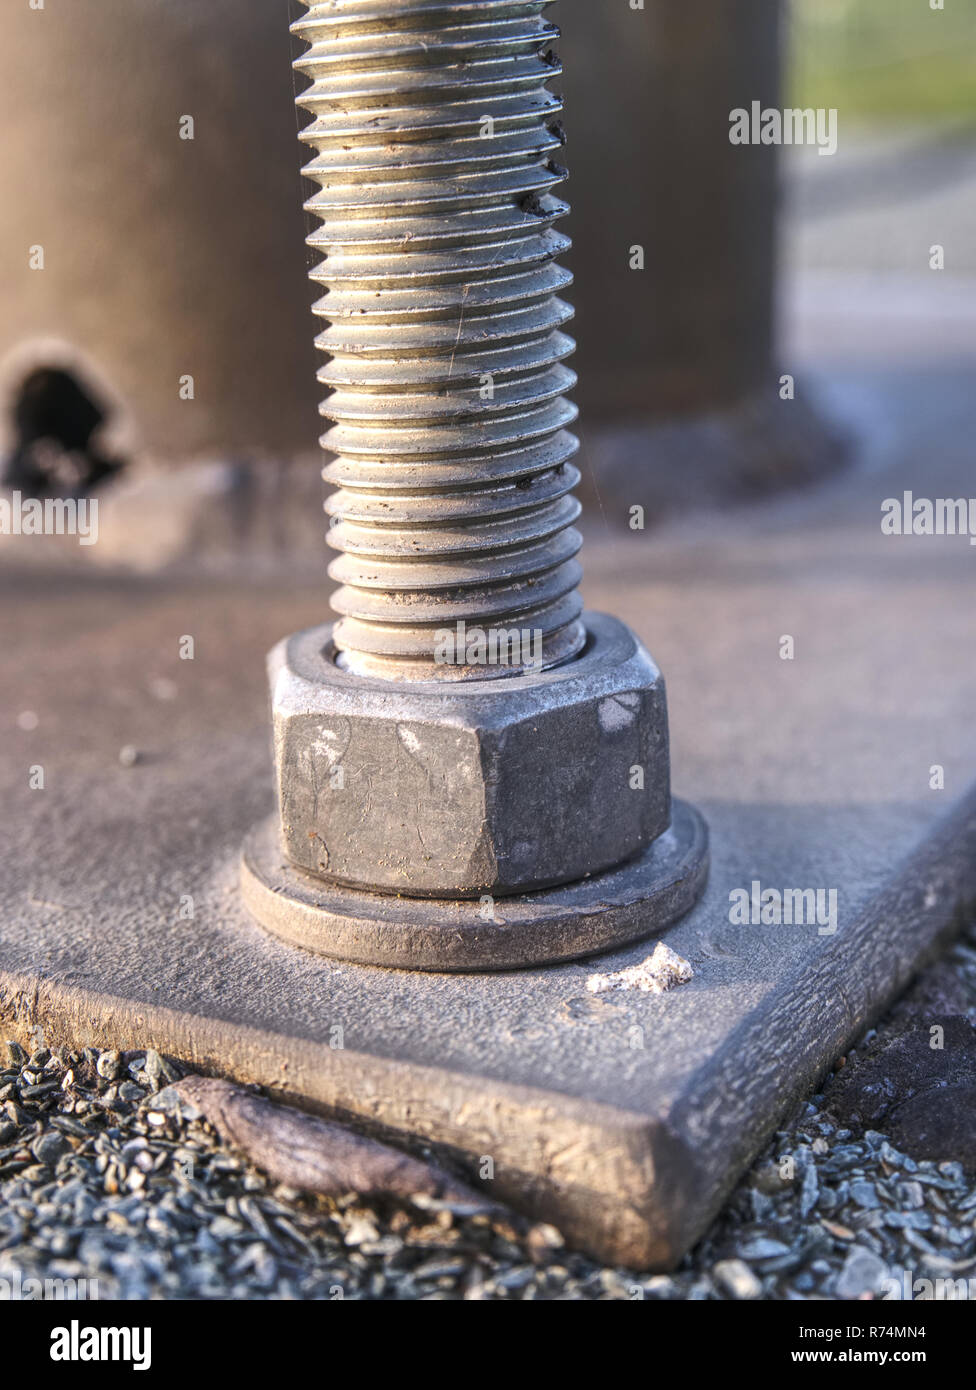 Detail der Schrauben. Stahlplatte basierend auf Anker Schrauben auf dem  Beton Säule Stockfotografie - Alamy